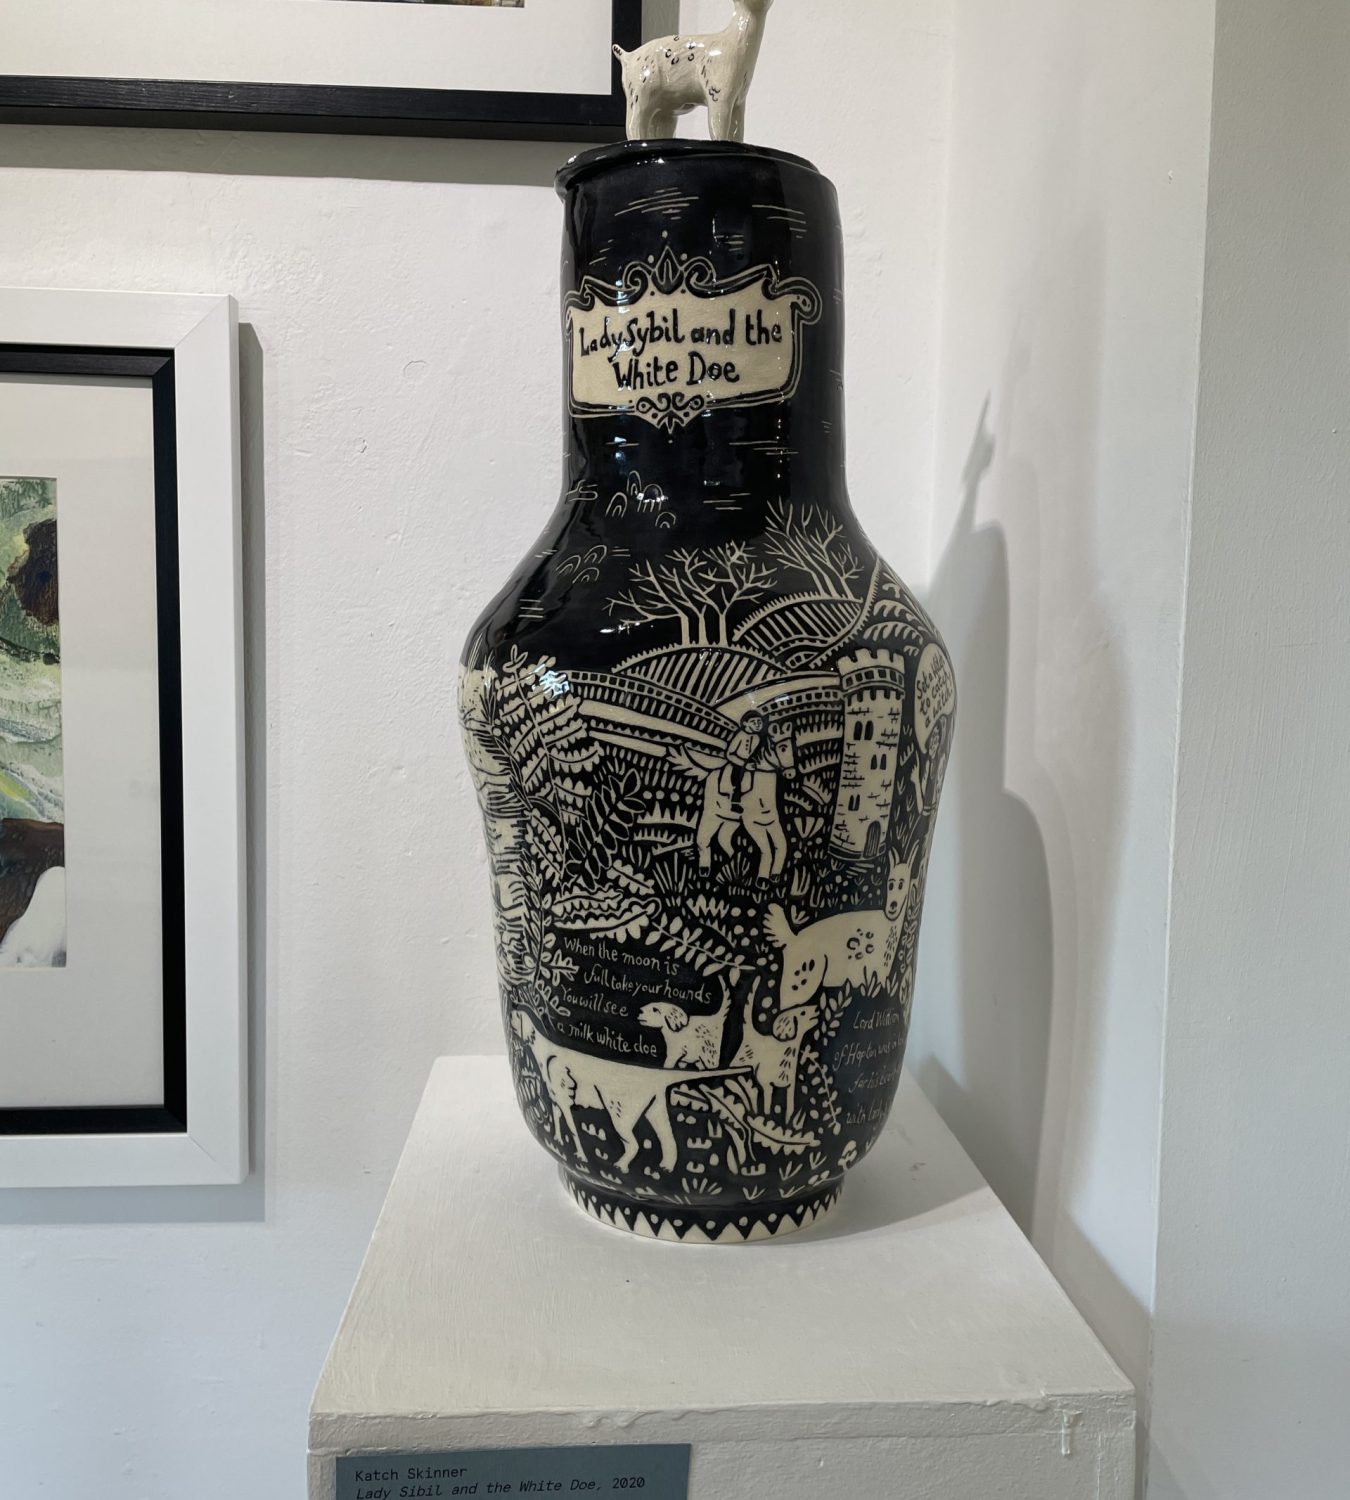 Vase by Katch Skinner